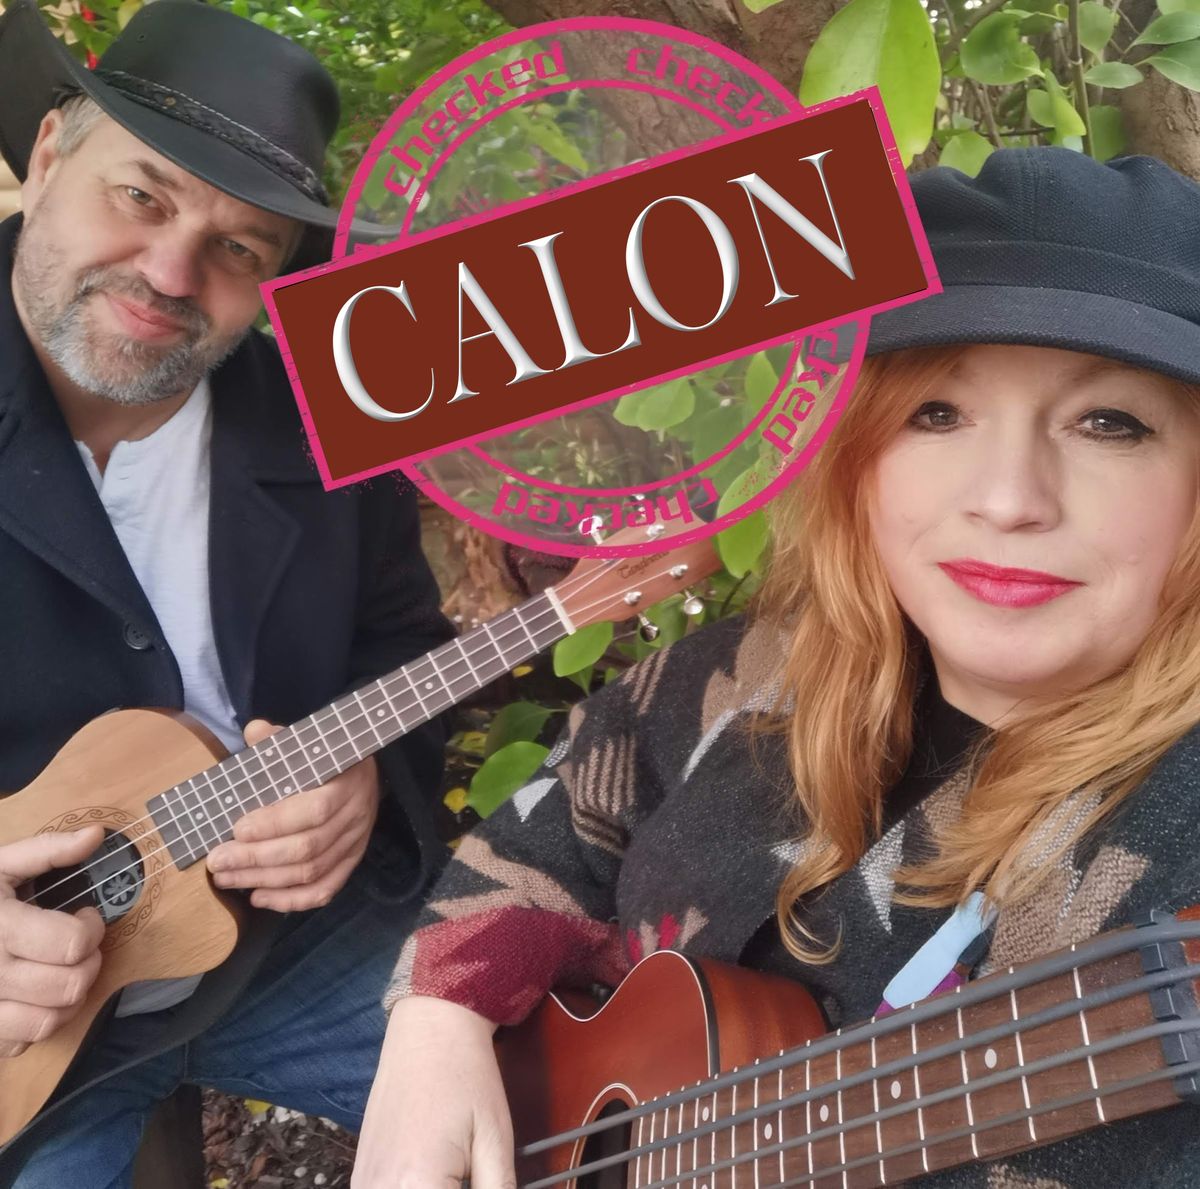 CALON live at The Foundry Brecon 